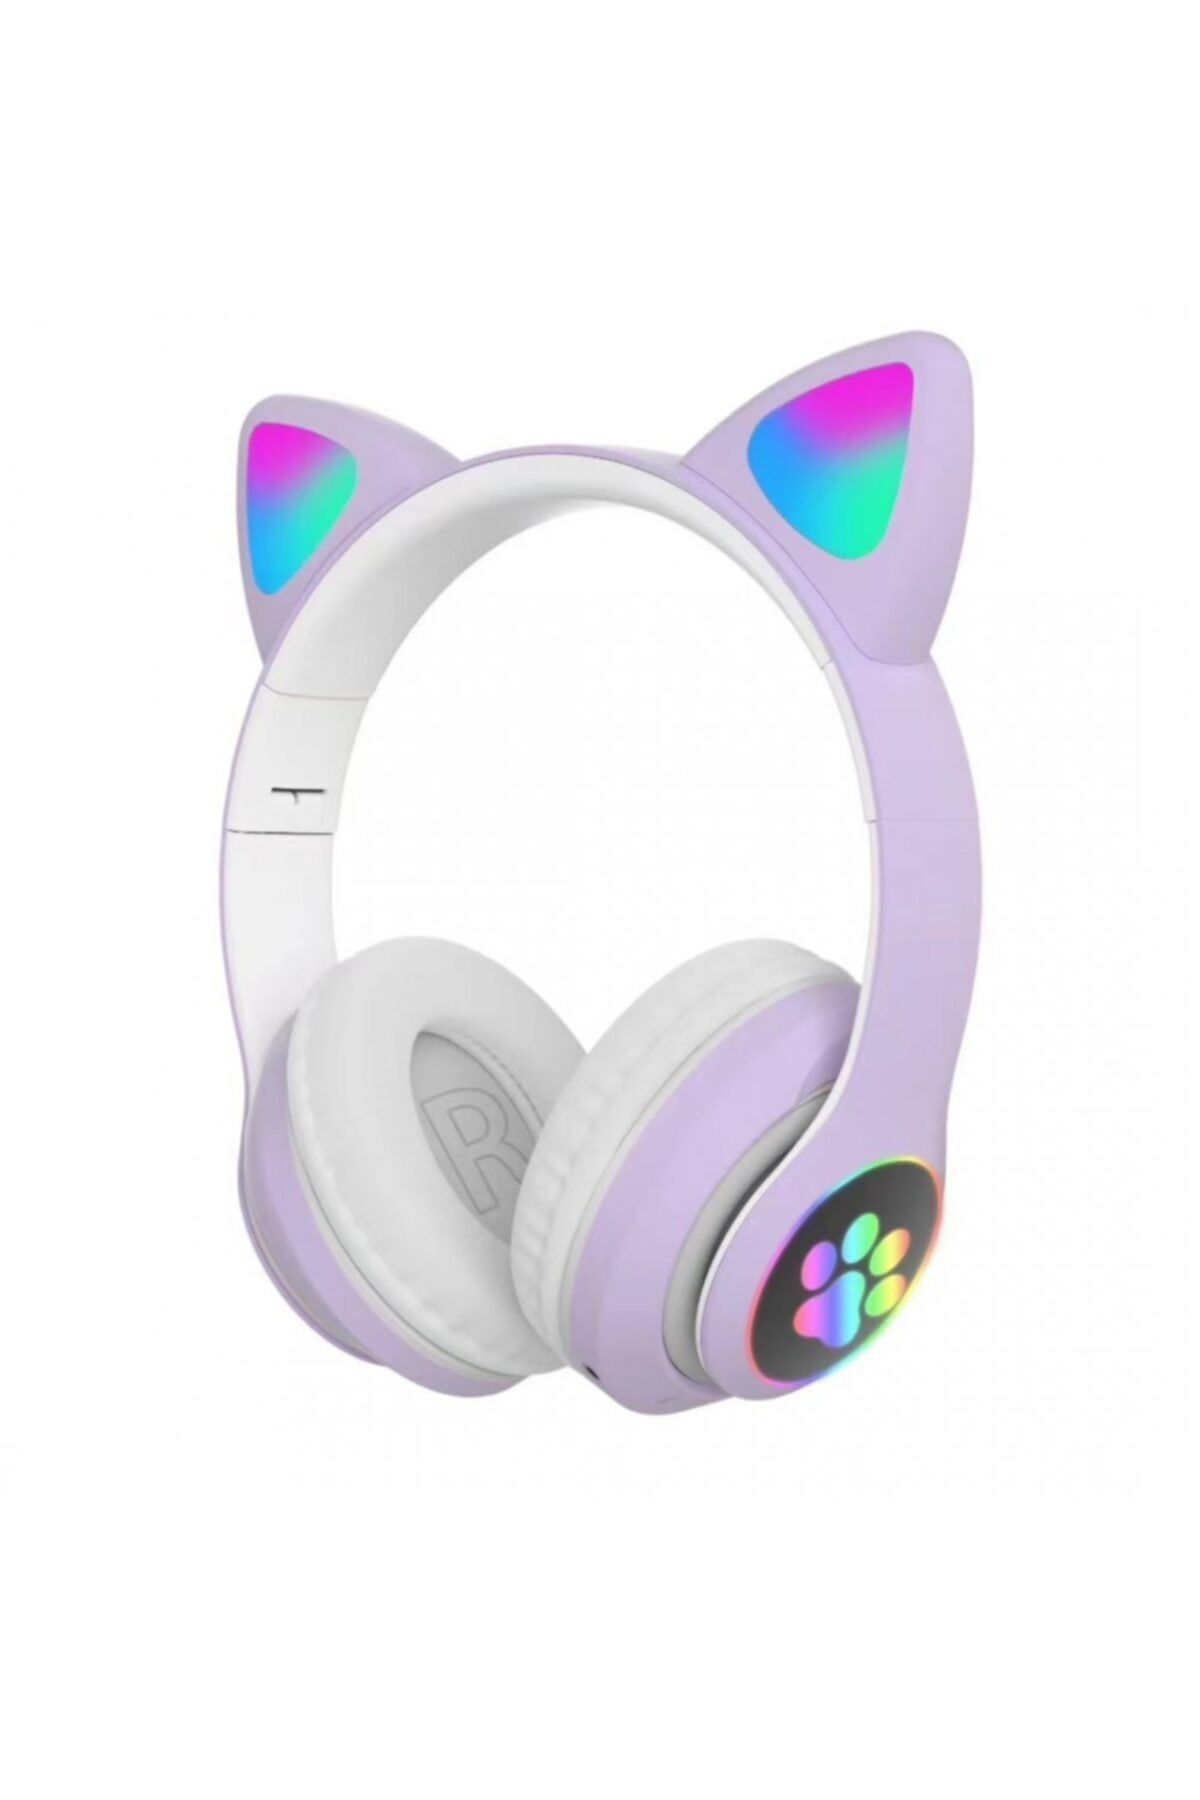 TEKNETSTORE Kablosuz Kedi Kulaklık Işıklı Kulaküstü Mikrofonlu Bluetooth Hafıza Kartı Girişli Çocuk Kulaklığı